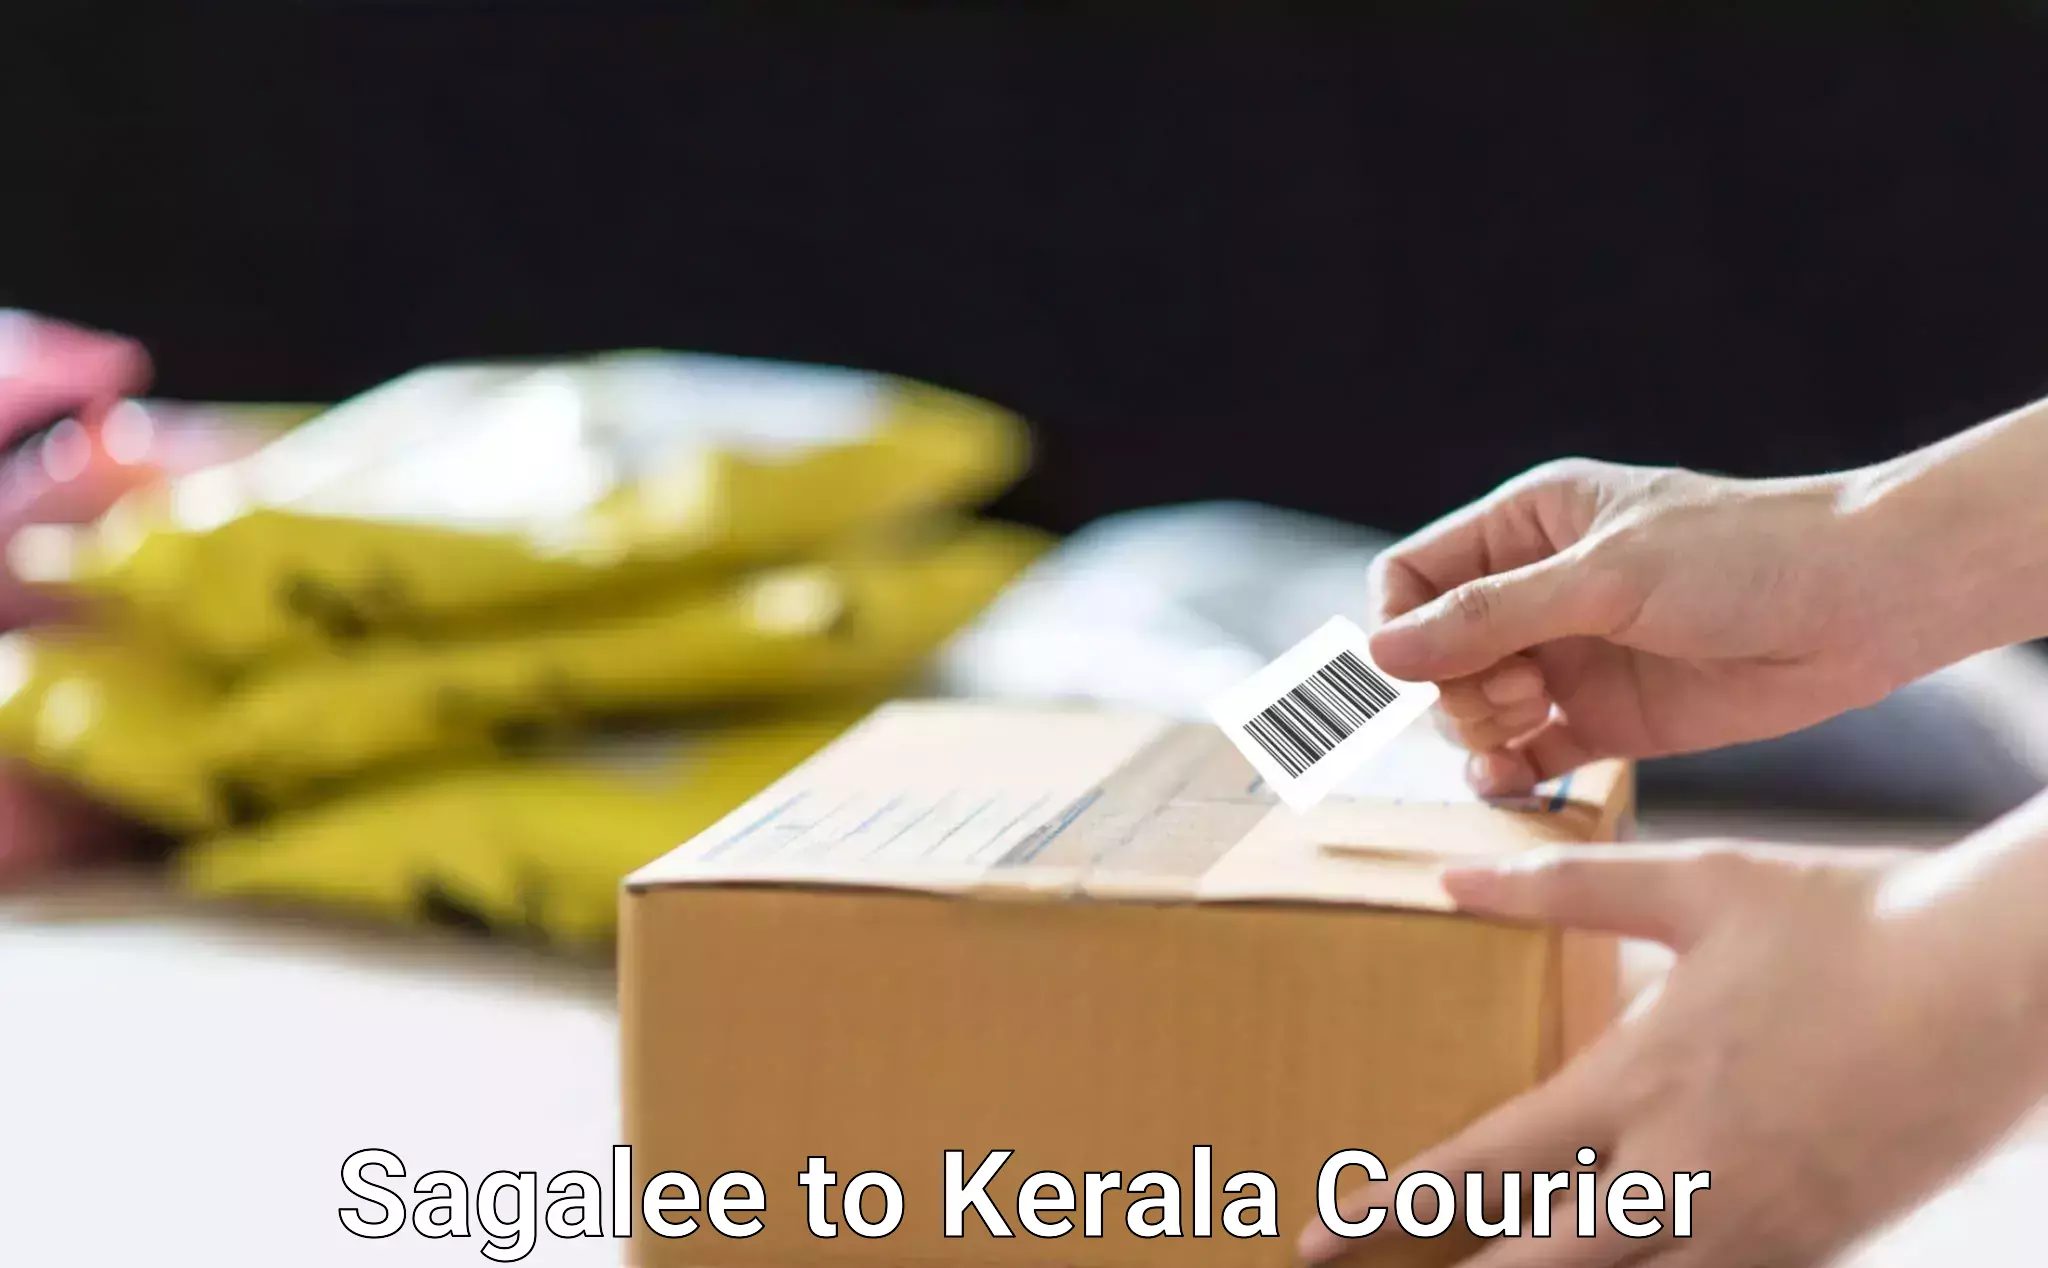 Secure packaging Sagalee to Kerala